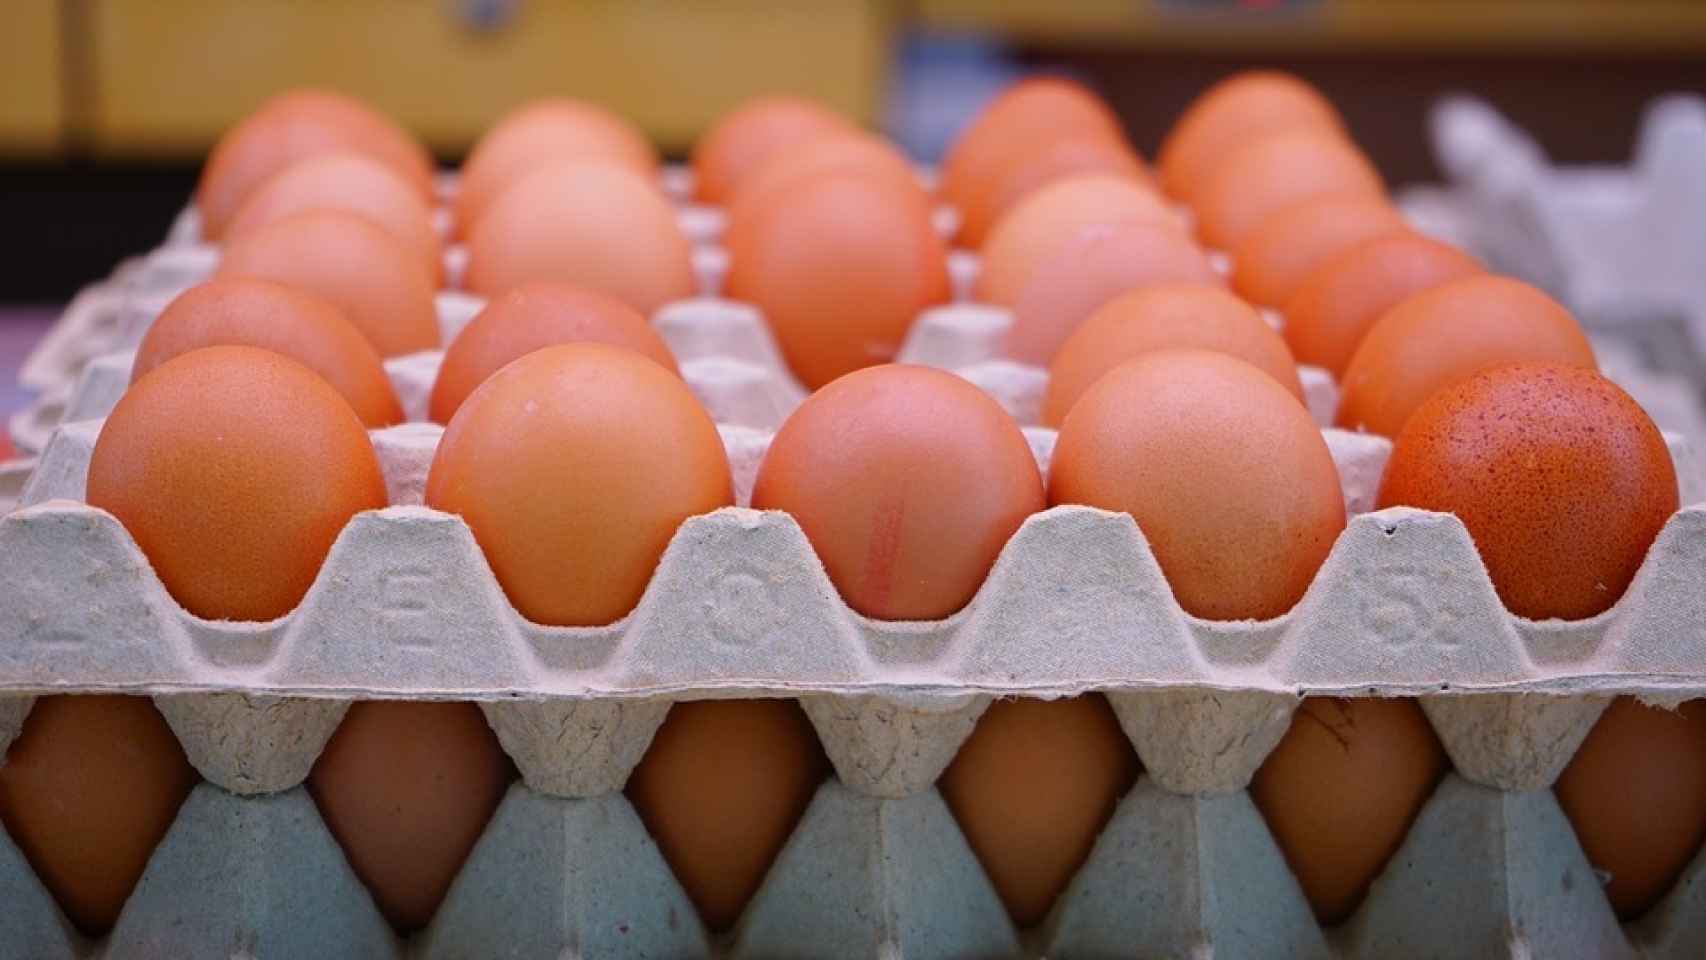 El huevo es uno de los alimentos con más vitamina D